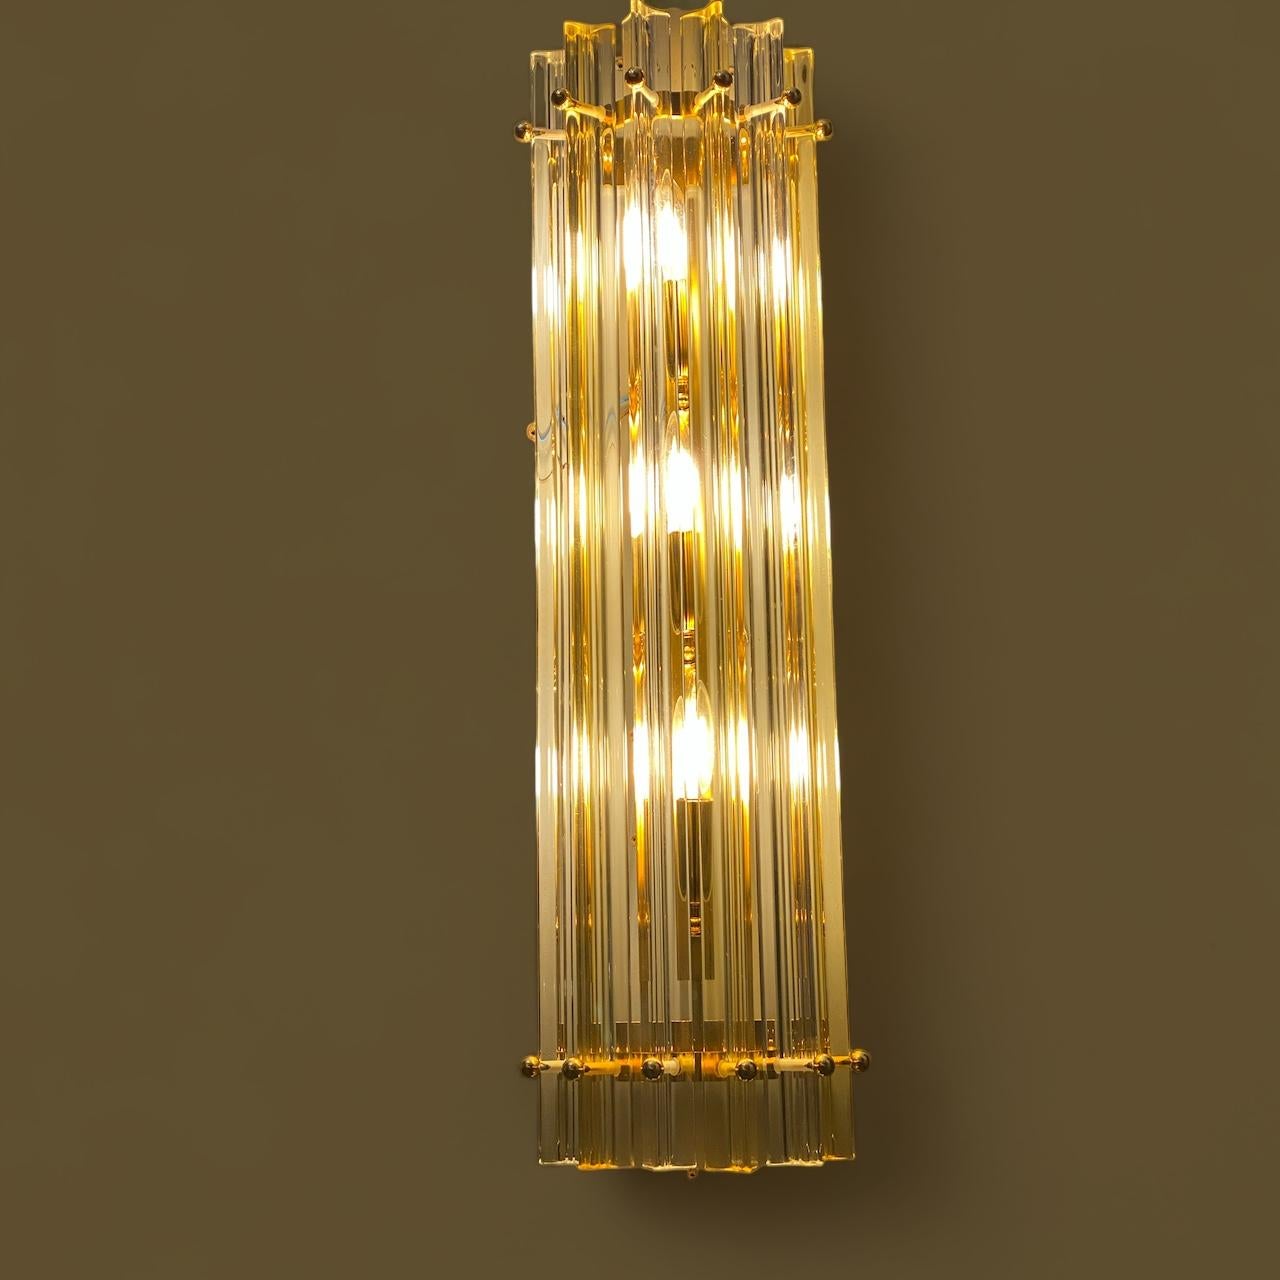 Feines Paar  bernsteinfarbener und klarer Tryi  Murano-Wandleuchter von einem  Prisma in Murano-Kristall mit goldenem Metallrahmen.

Glühbirnen: 2 Glühbirnen für jede Applique ( E 14 Dimension nicht in diesem Verkauf) Auf Anfrage können wir die